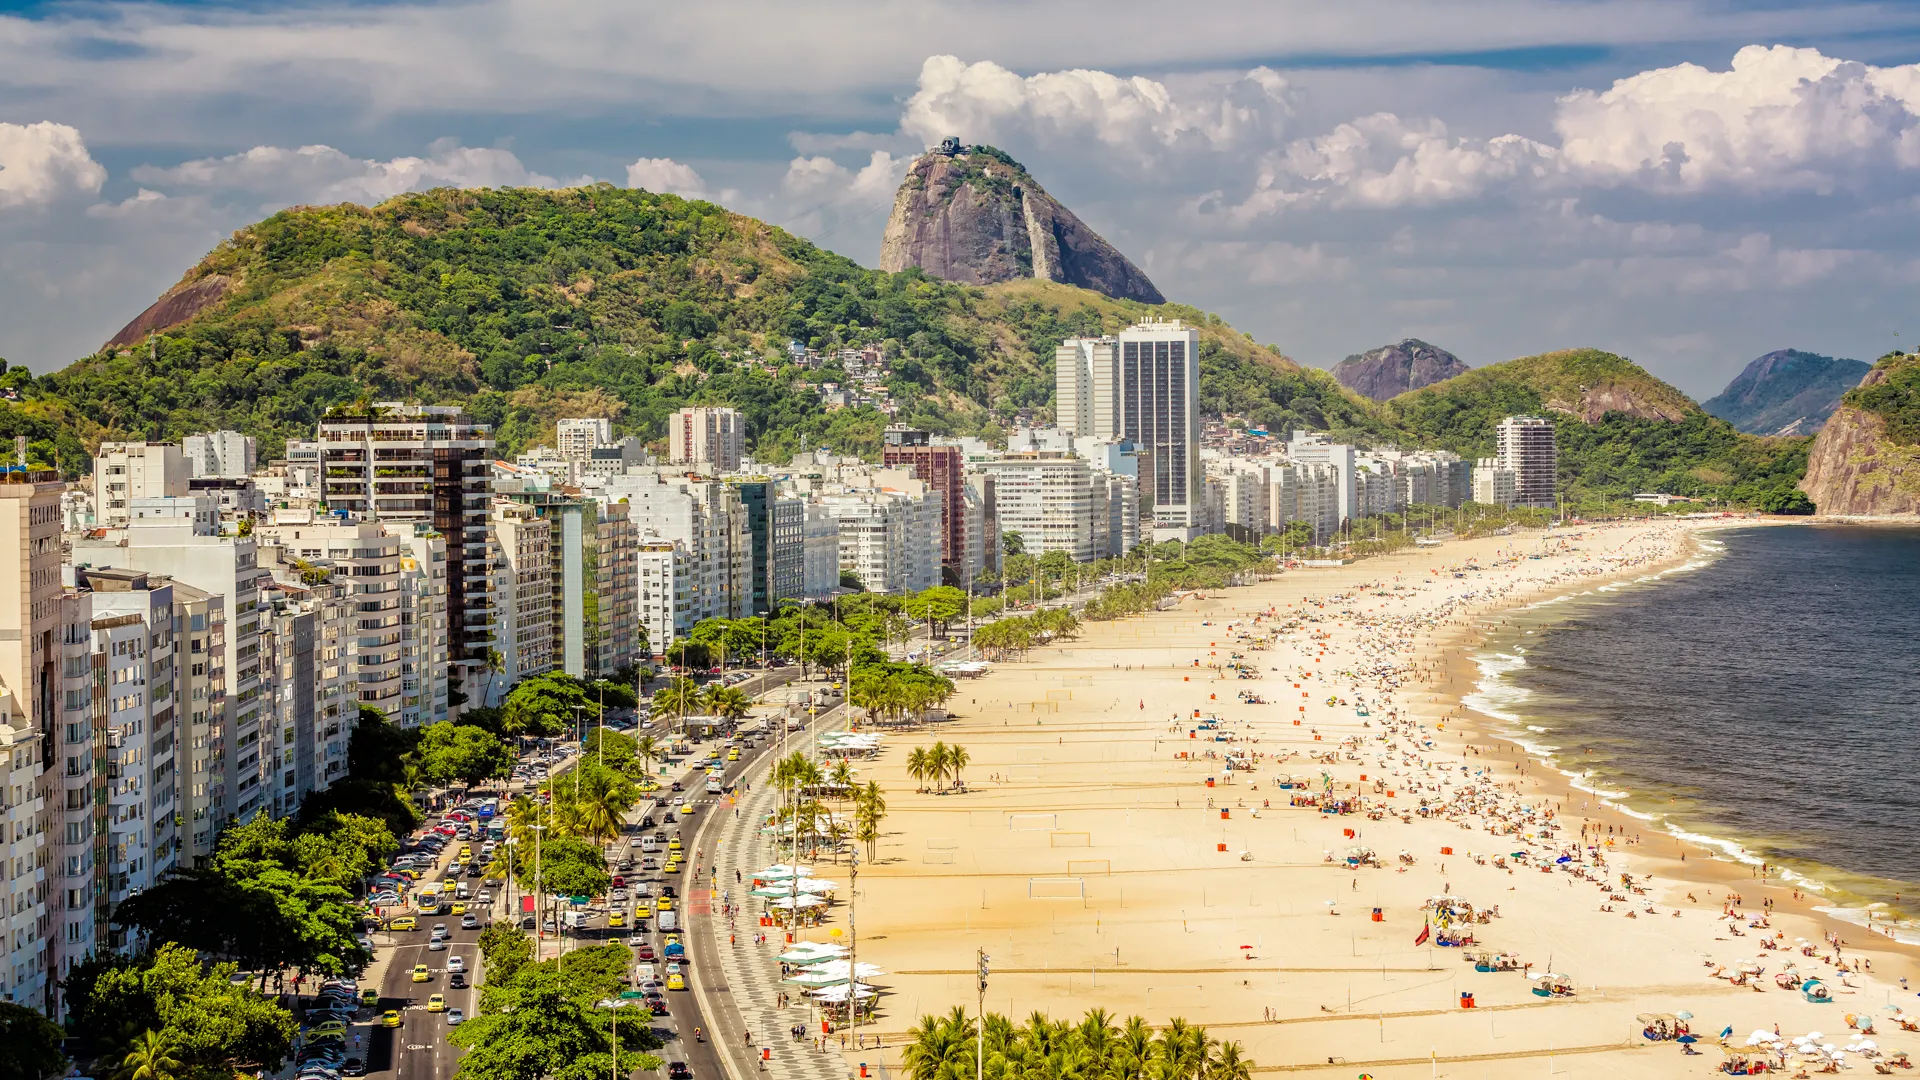 Copacabana Beach and Sugar Loaf Mountain,Rio de Janeiro.